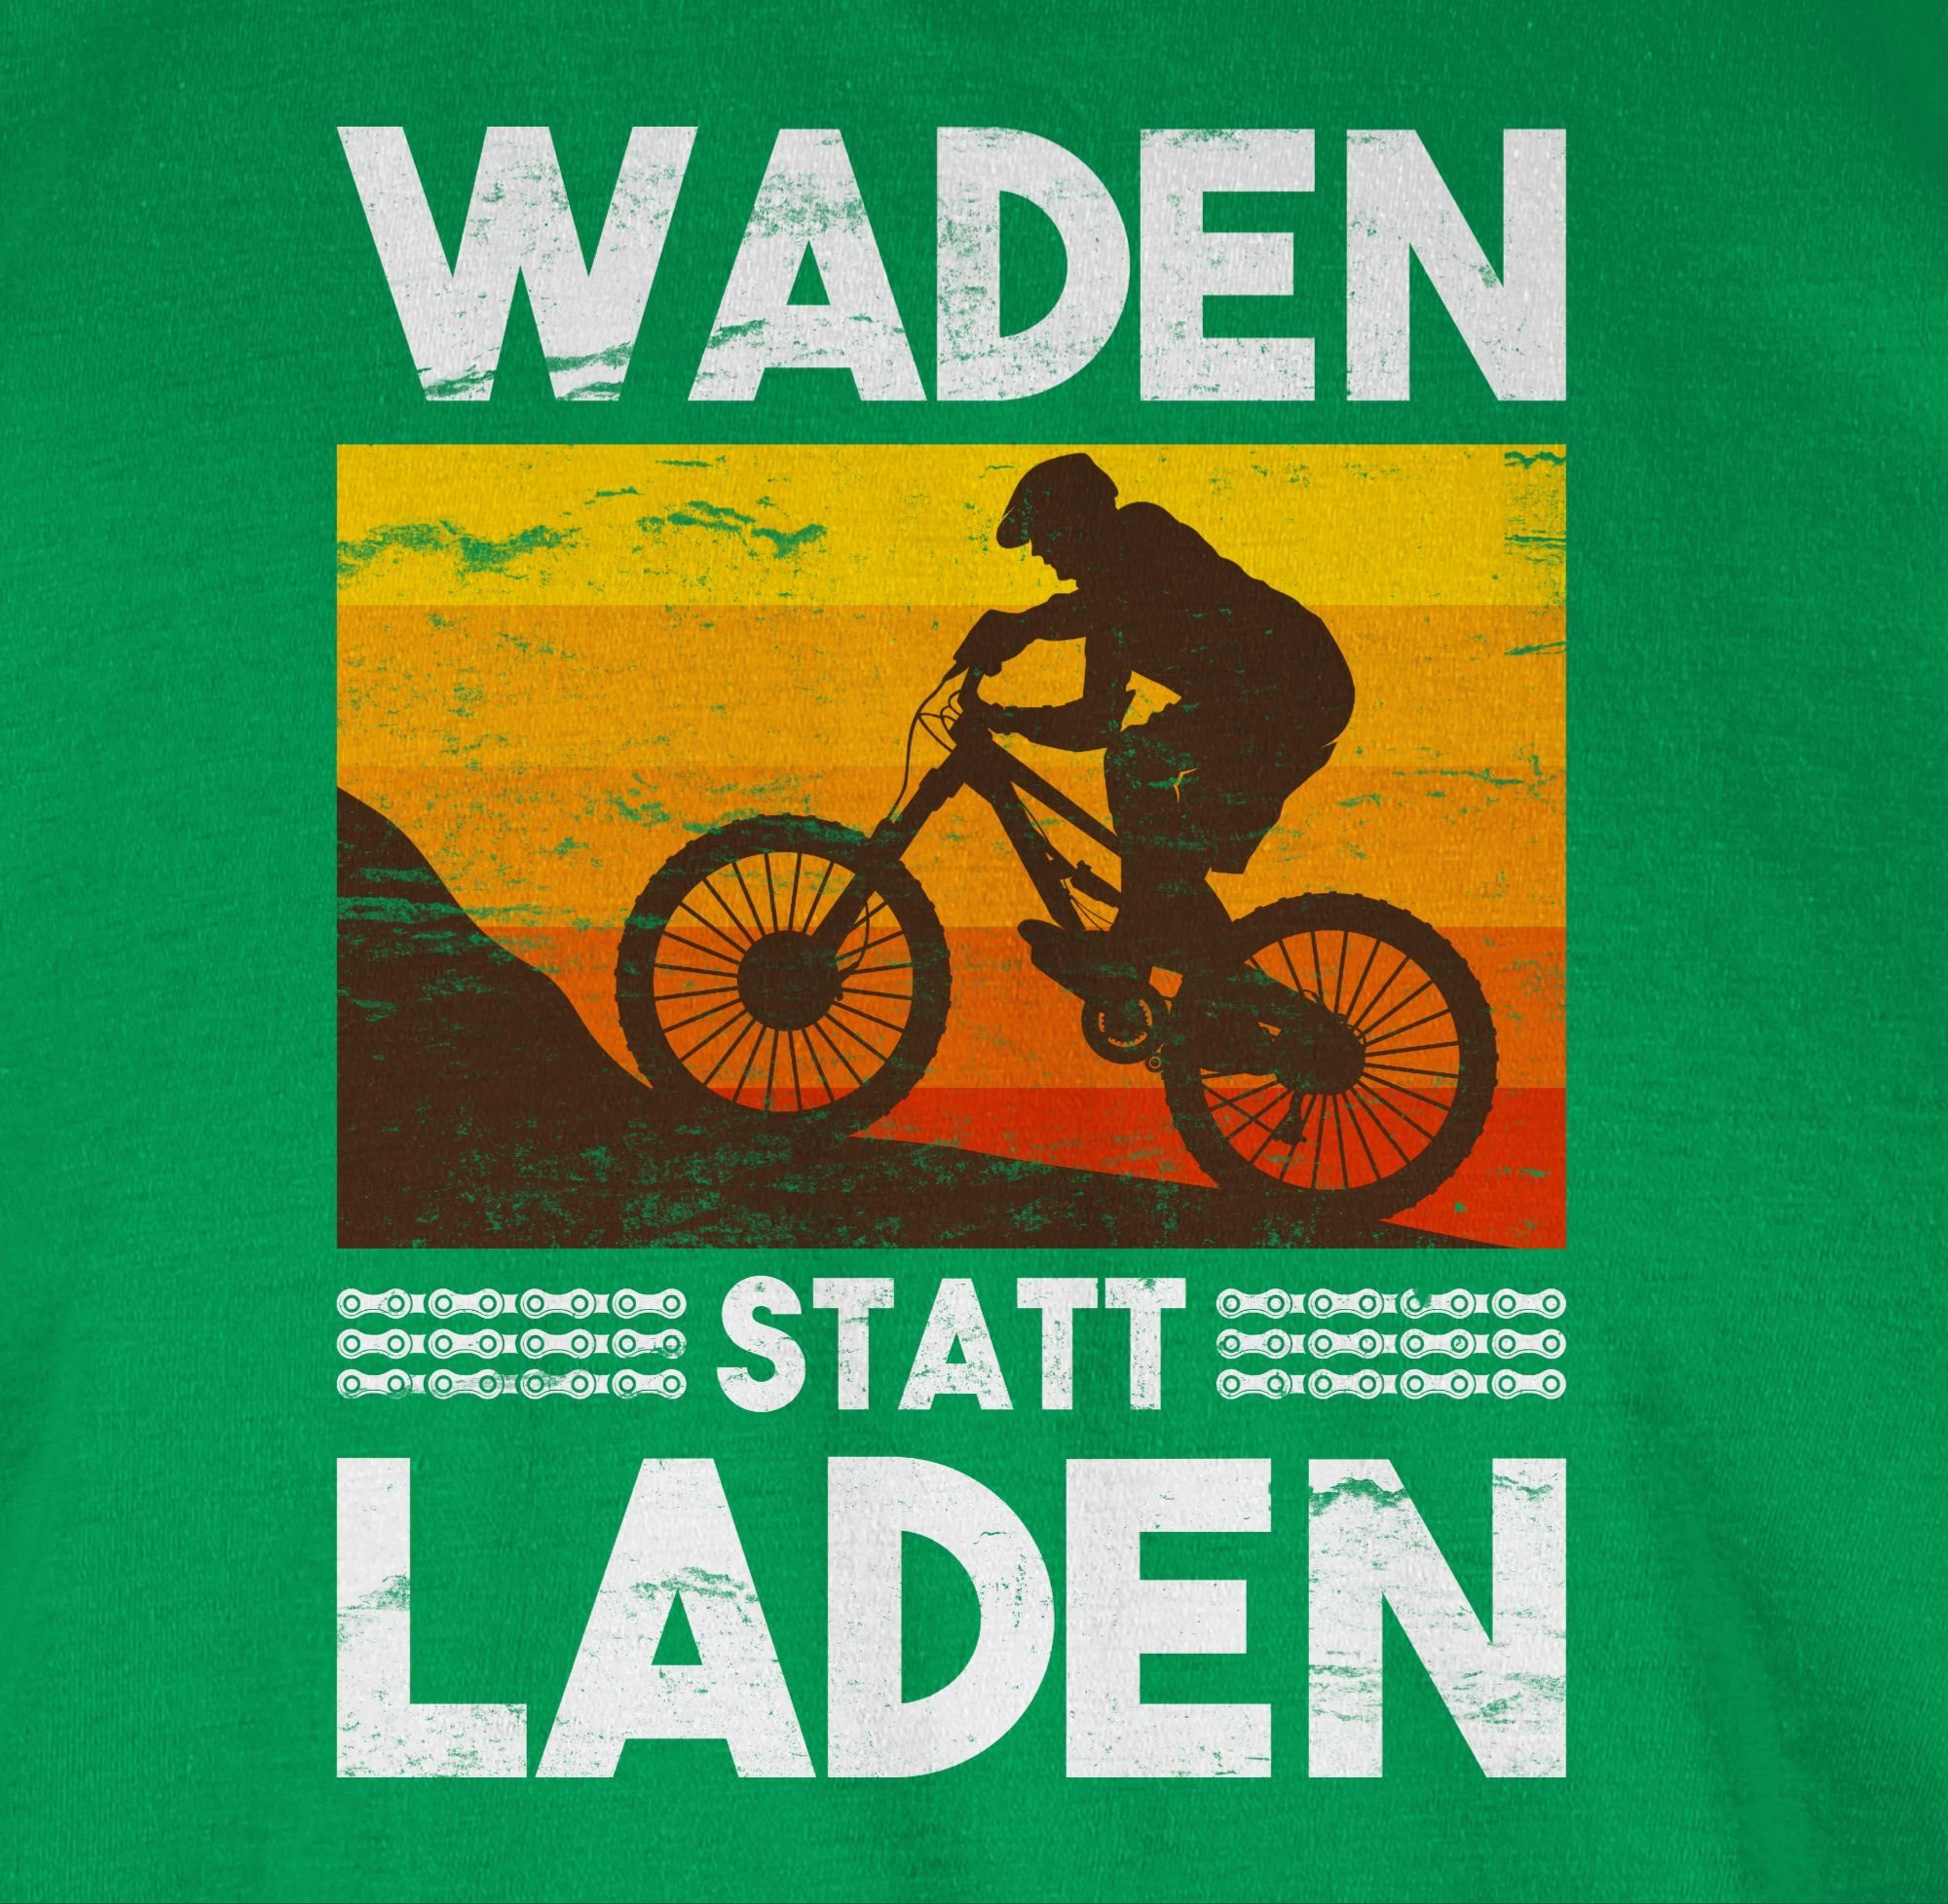 03 statt T-Shirt Bekleidung Grün Radsport weiß Laden Fahrrad Waden Vintage Shirtracer